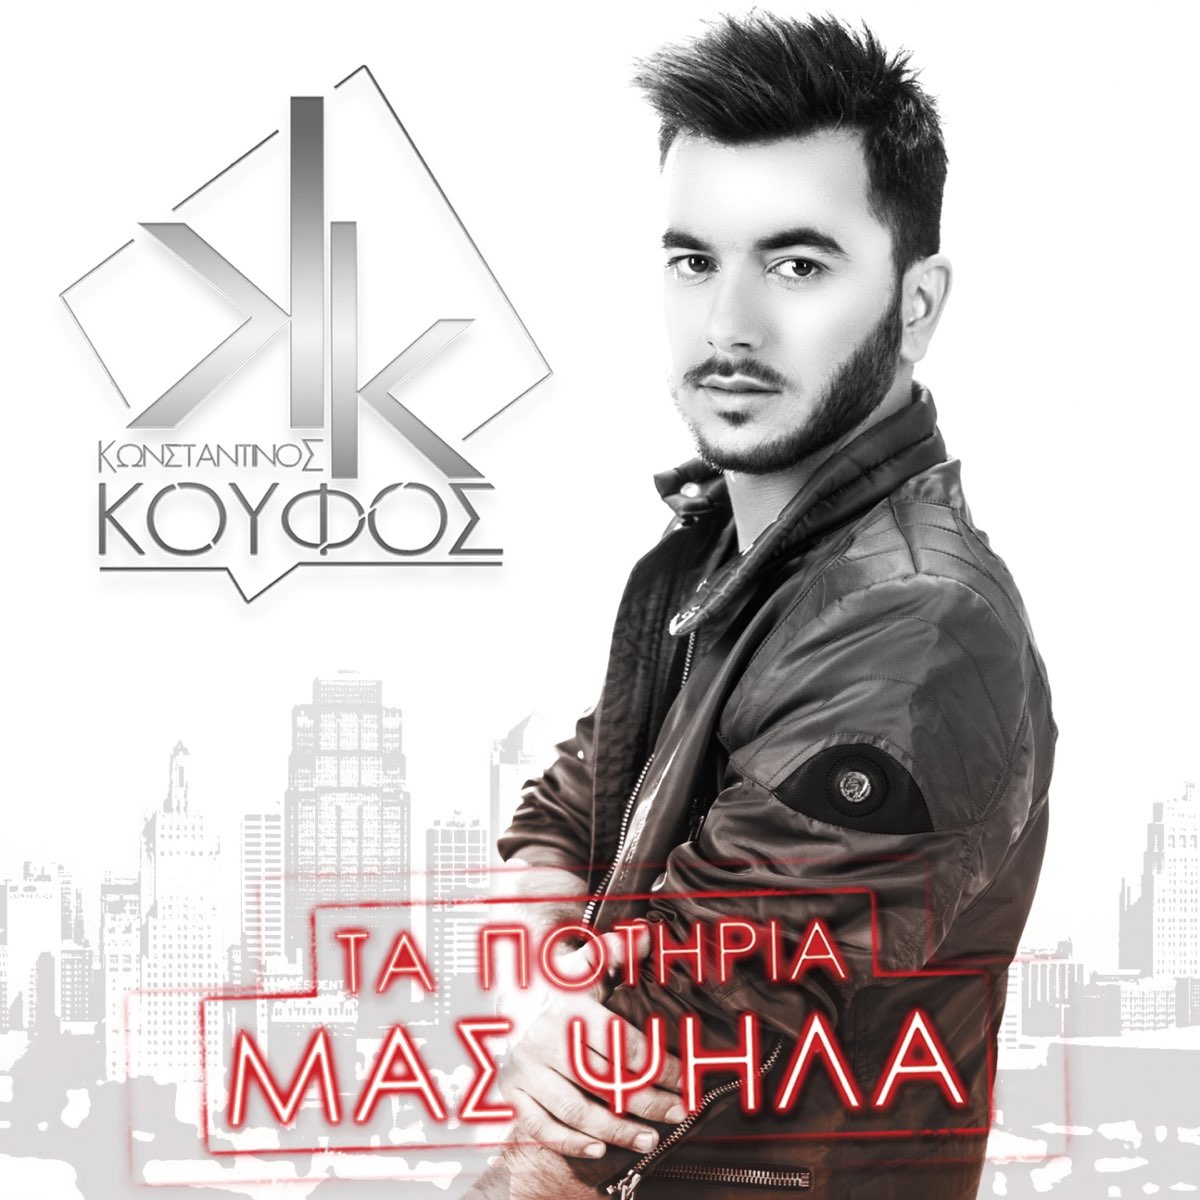 Ta Potiria Mas Psila - Single - Album by Konstantinos Koufos - Apple Music